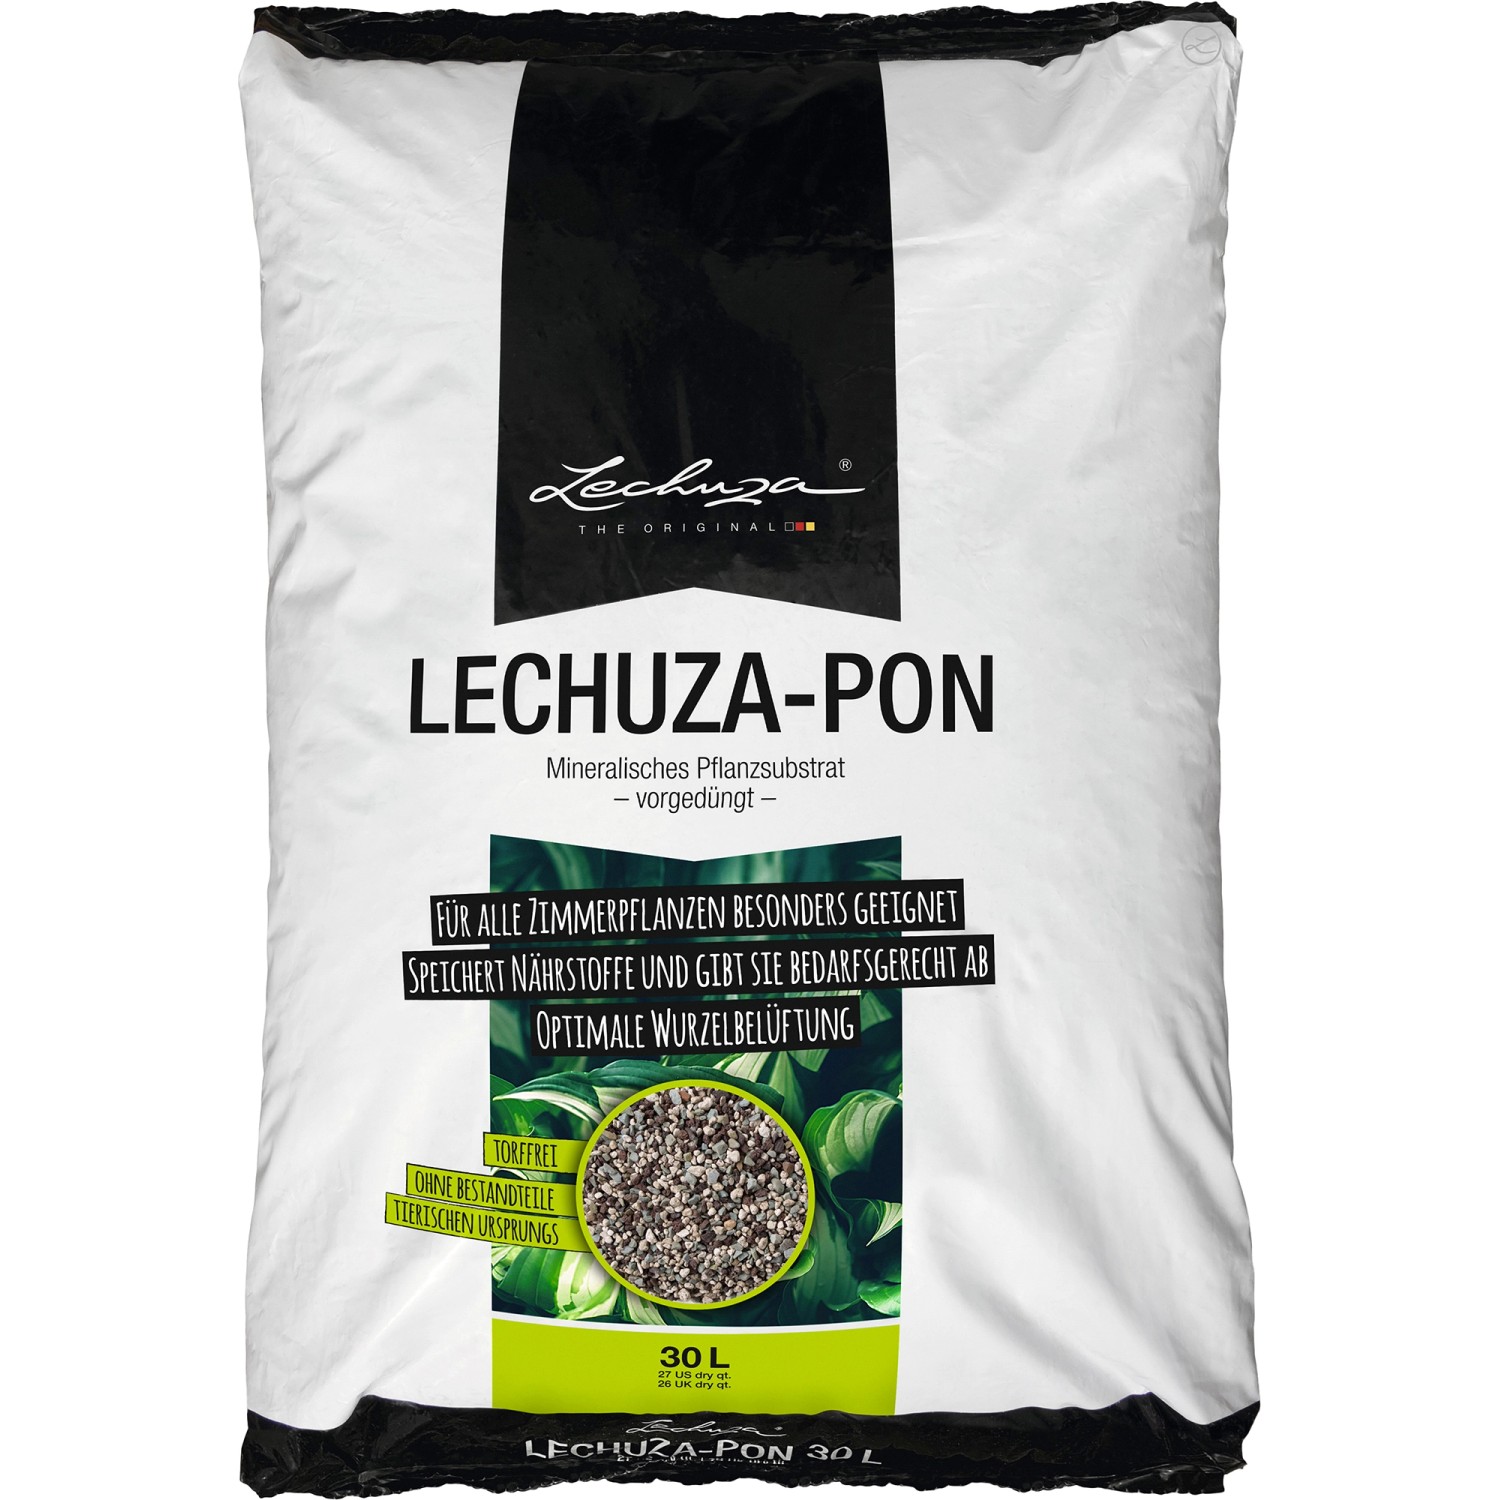 Pflanzsubstrat Lechuza-Pon 30 Liter für Zimmerpflanzen von Lechuza